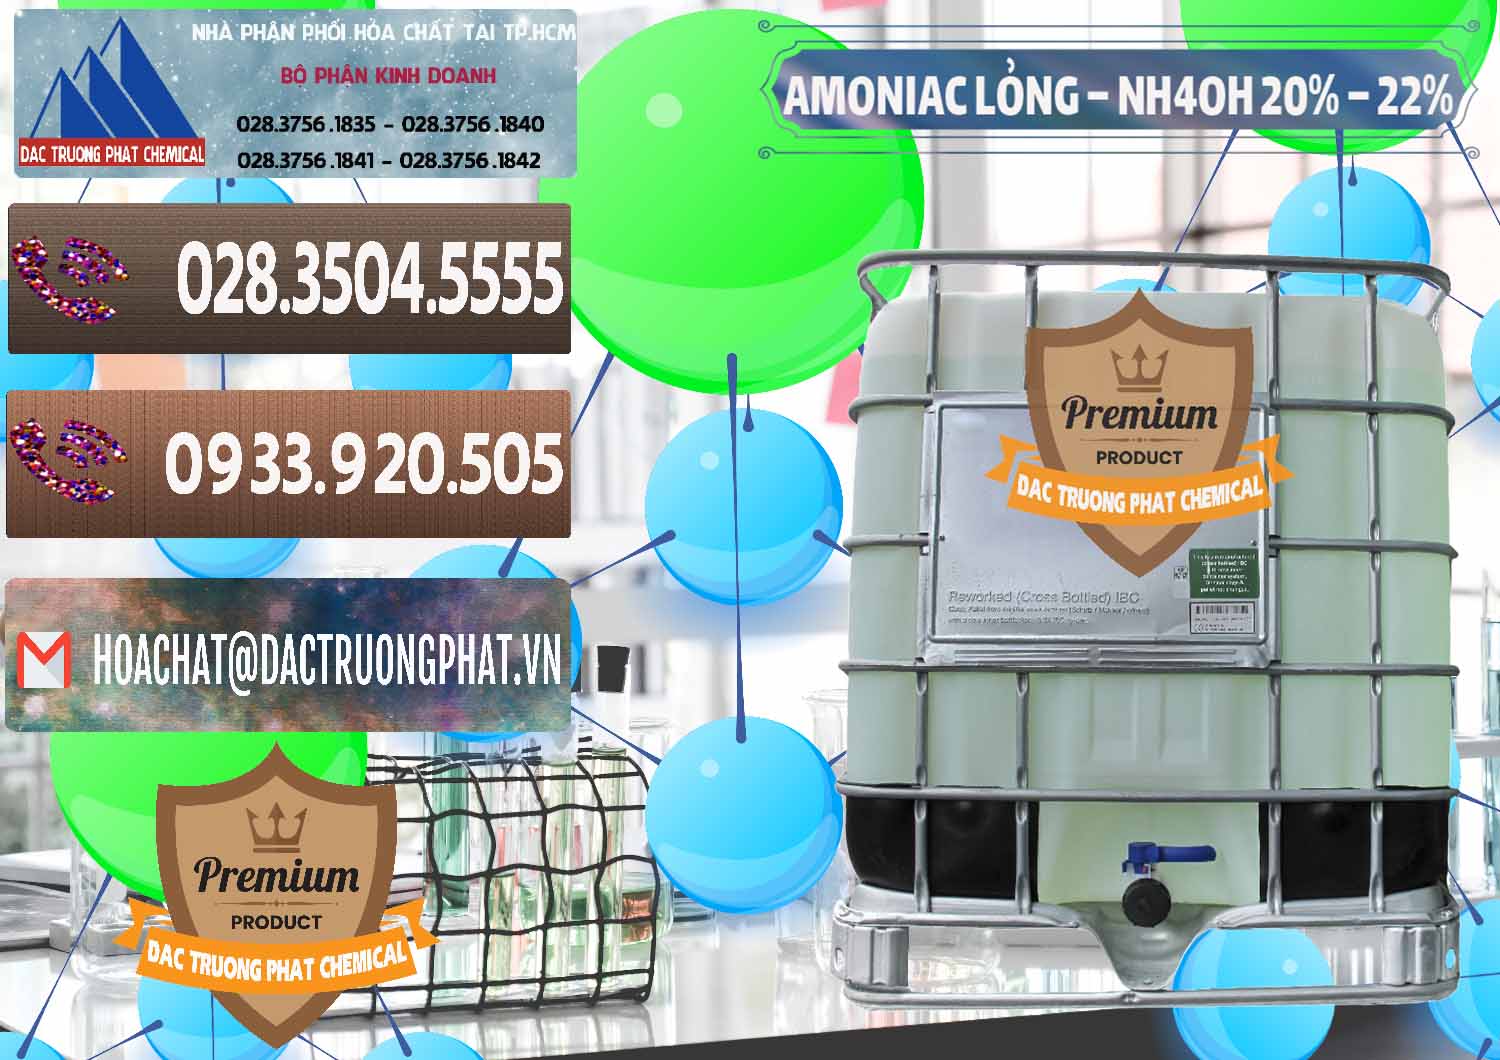 Cty chuyên phân phối và kinh doanh Amoniac Lỏng – NH4OH 20% – 22% Việt Nam - 0185 - Nơi chuyên kinh doanh & cung cấp hóa chất tại TP.HCM - hoachatviet.net